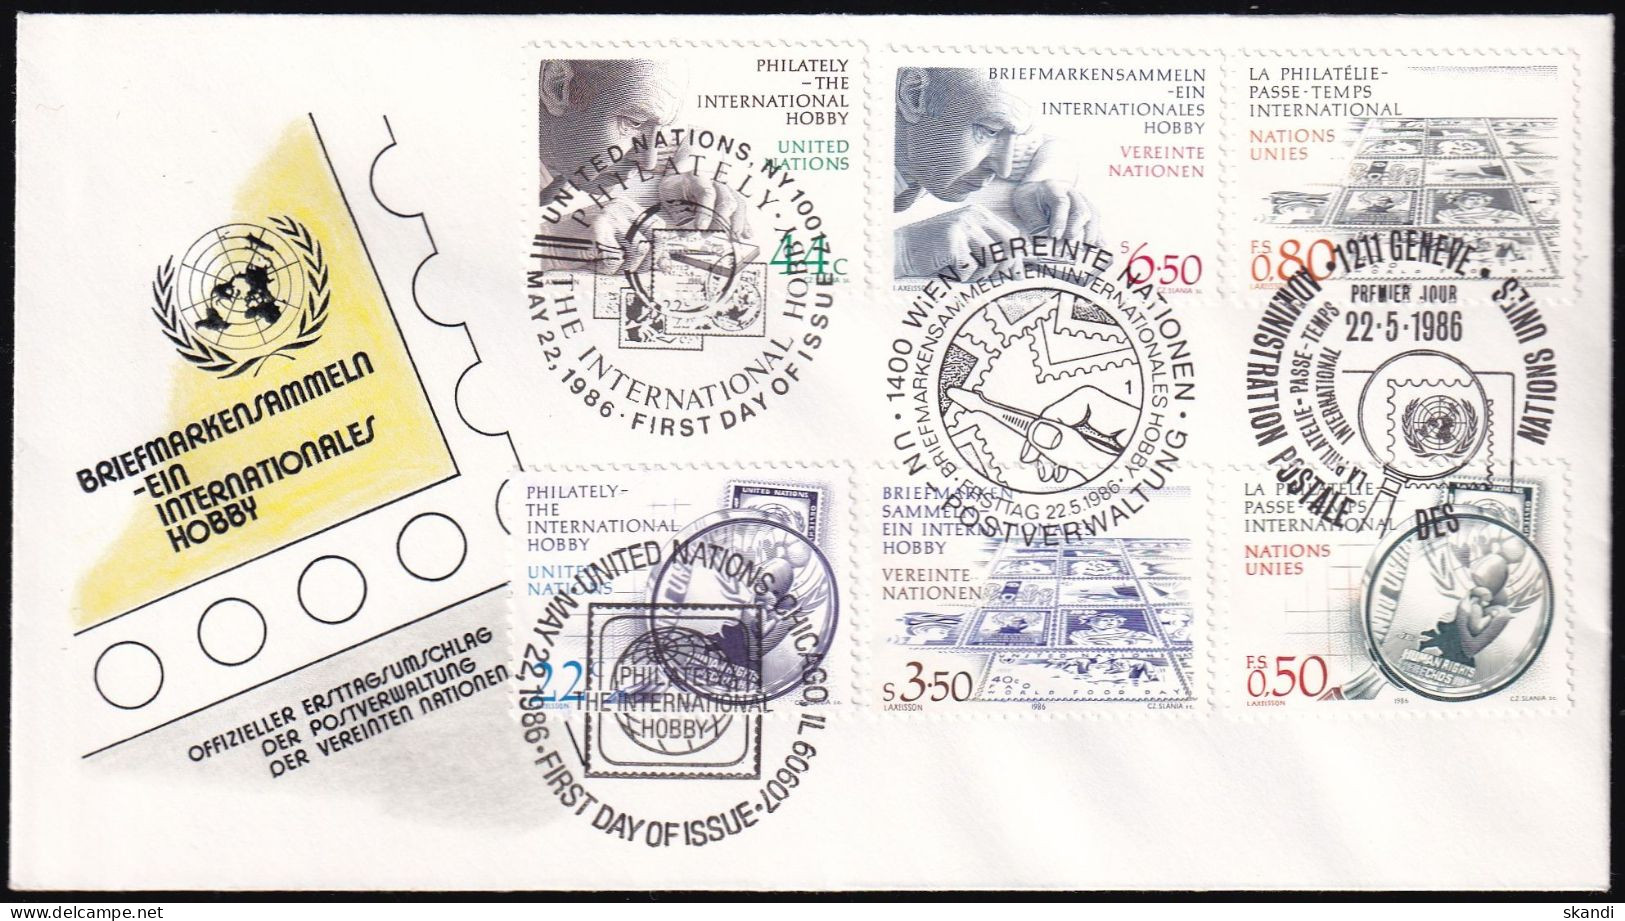 UNO NEW YORK - WIEN - GENF 1986 TRIO-FDC Briefmarkensammeln - Gemeinschaftsausgaben New York/Genf/Wien